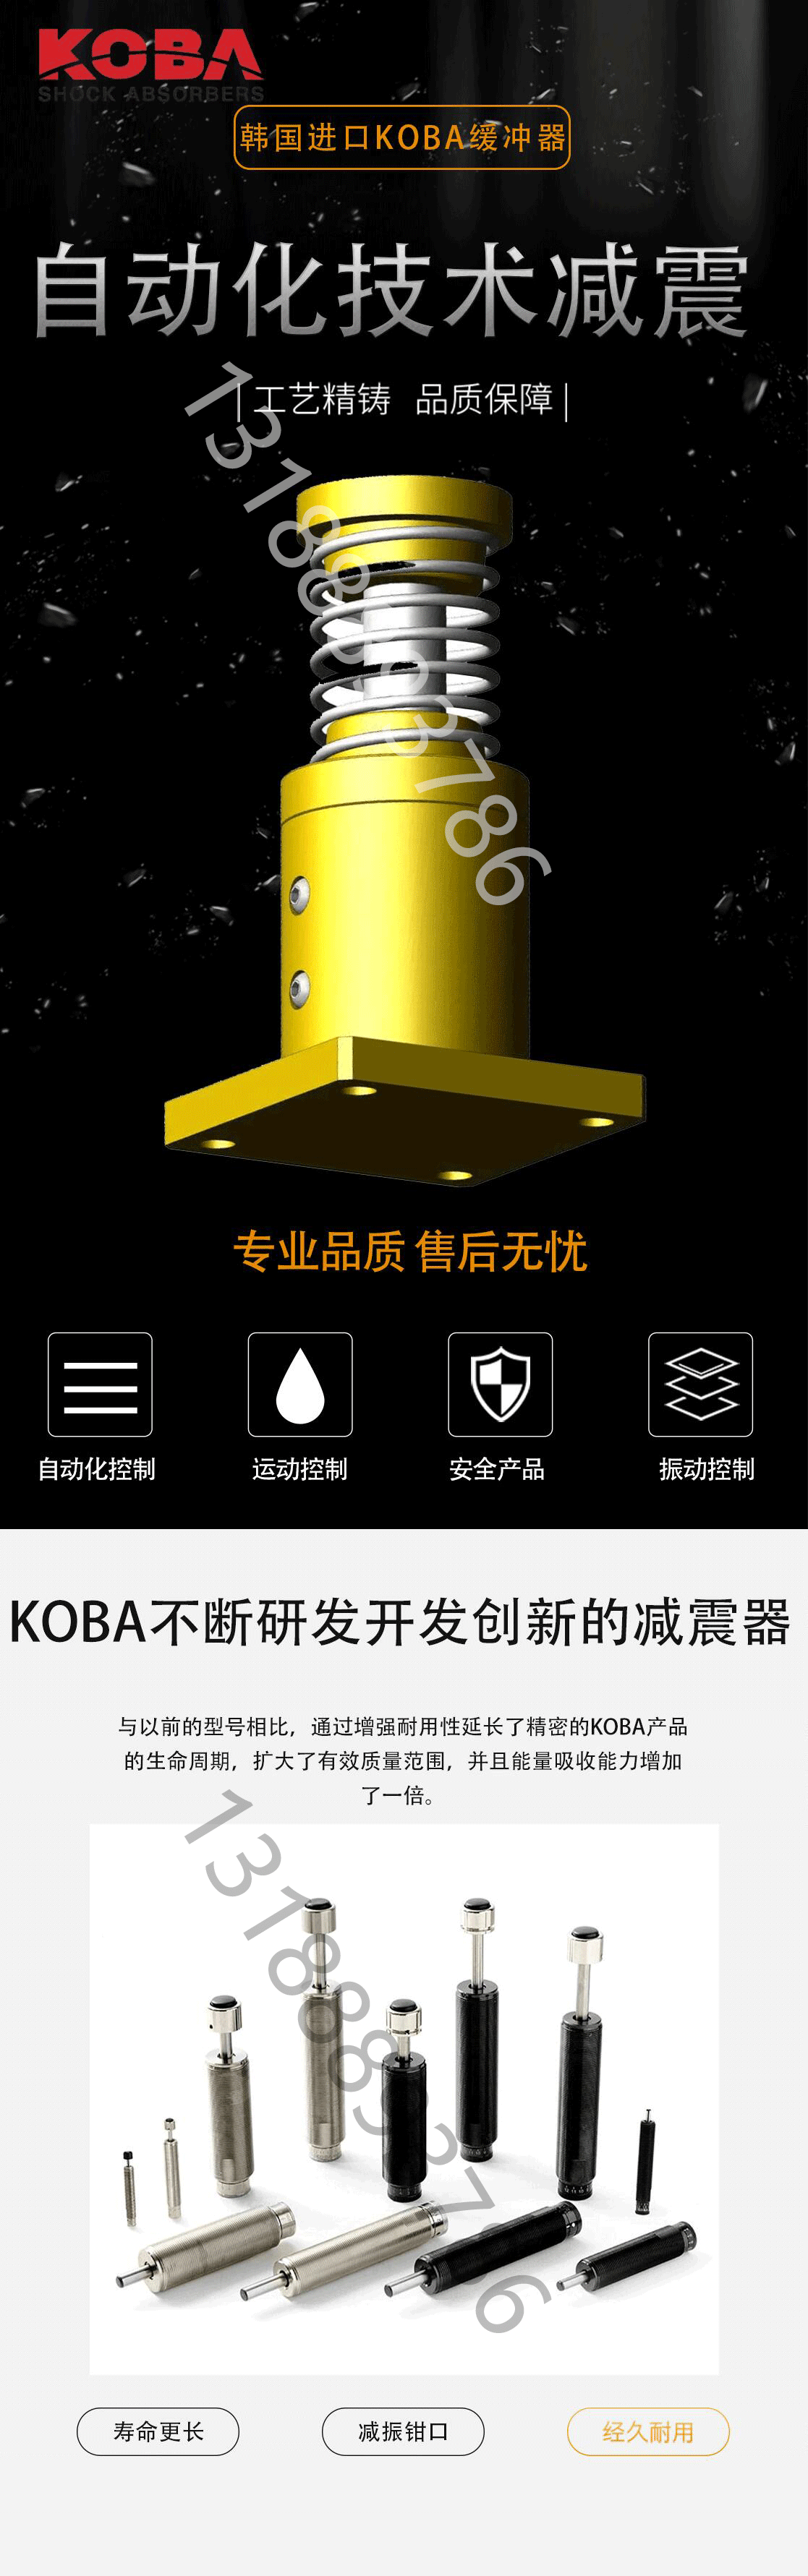 KOBA缓冲器如何提供设备保护和安全性？